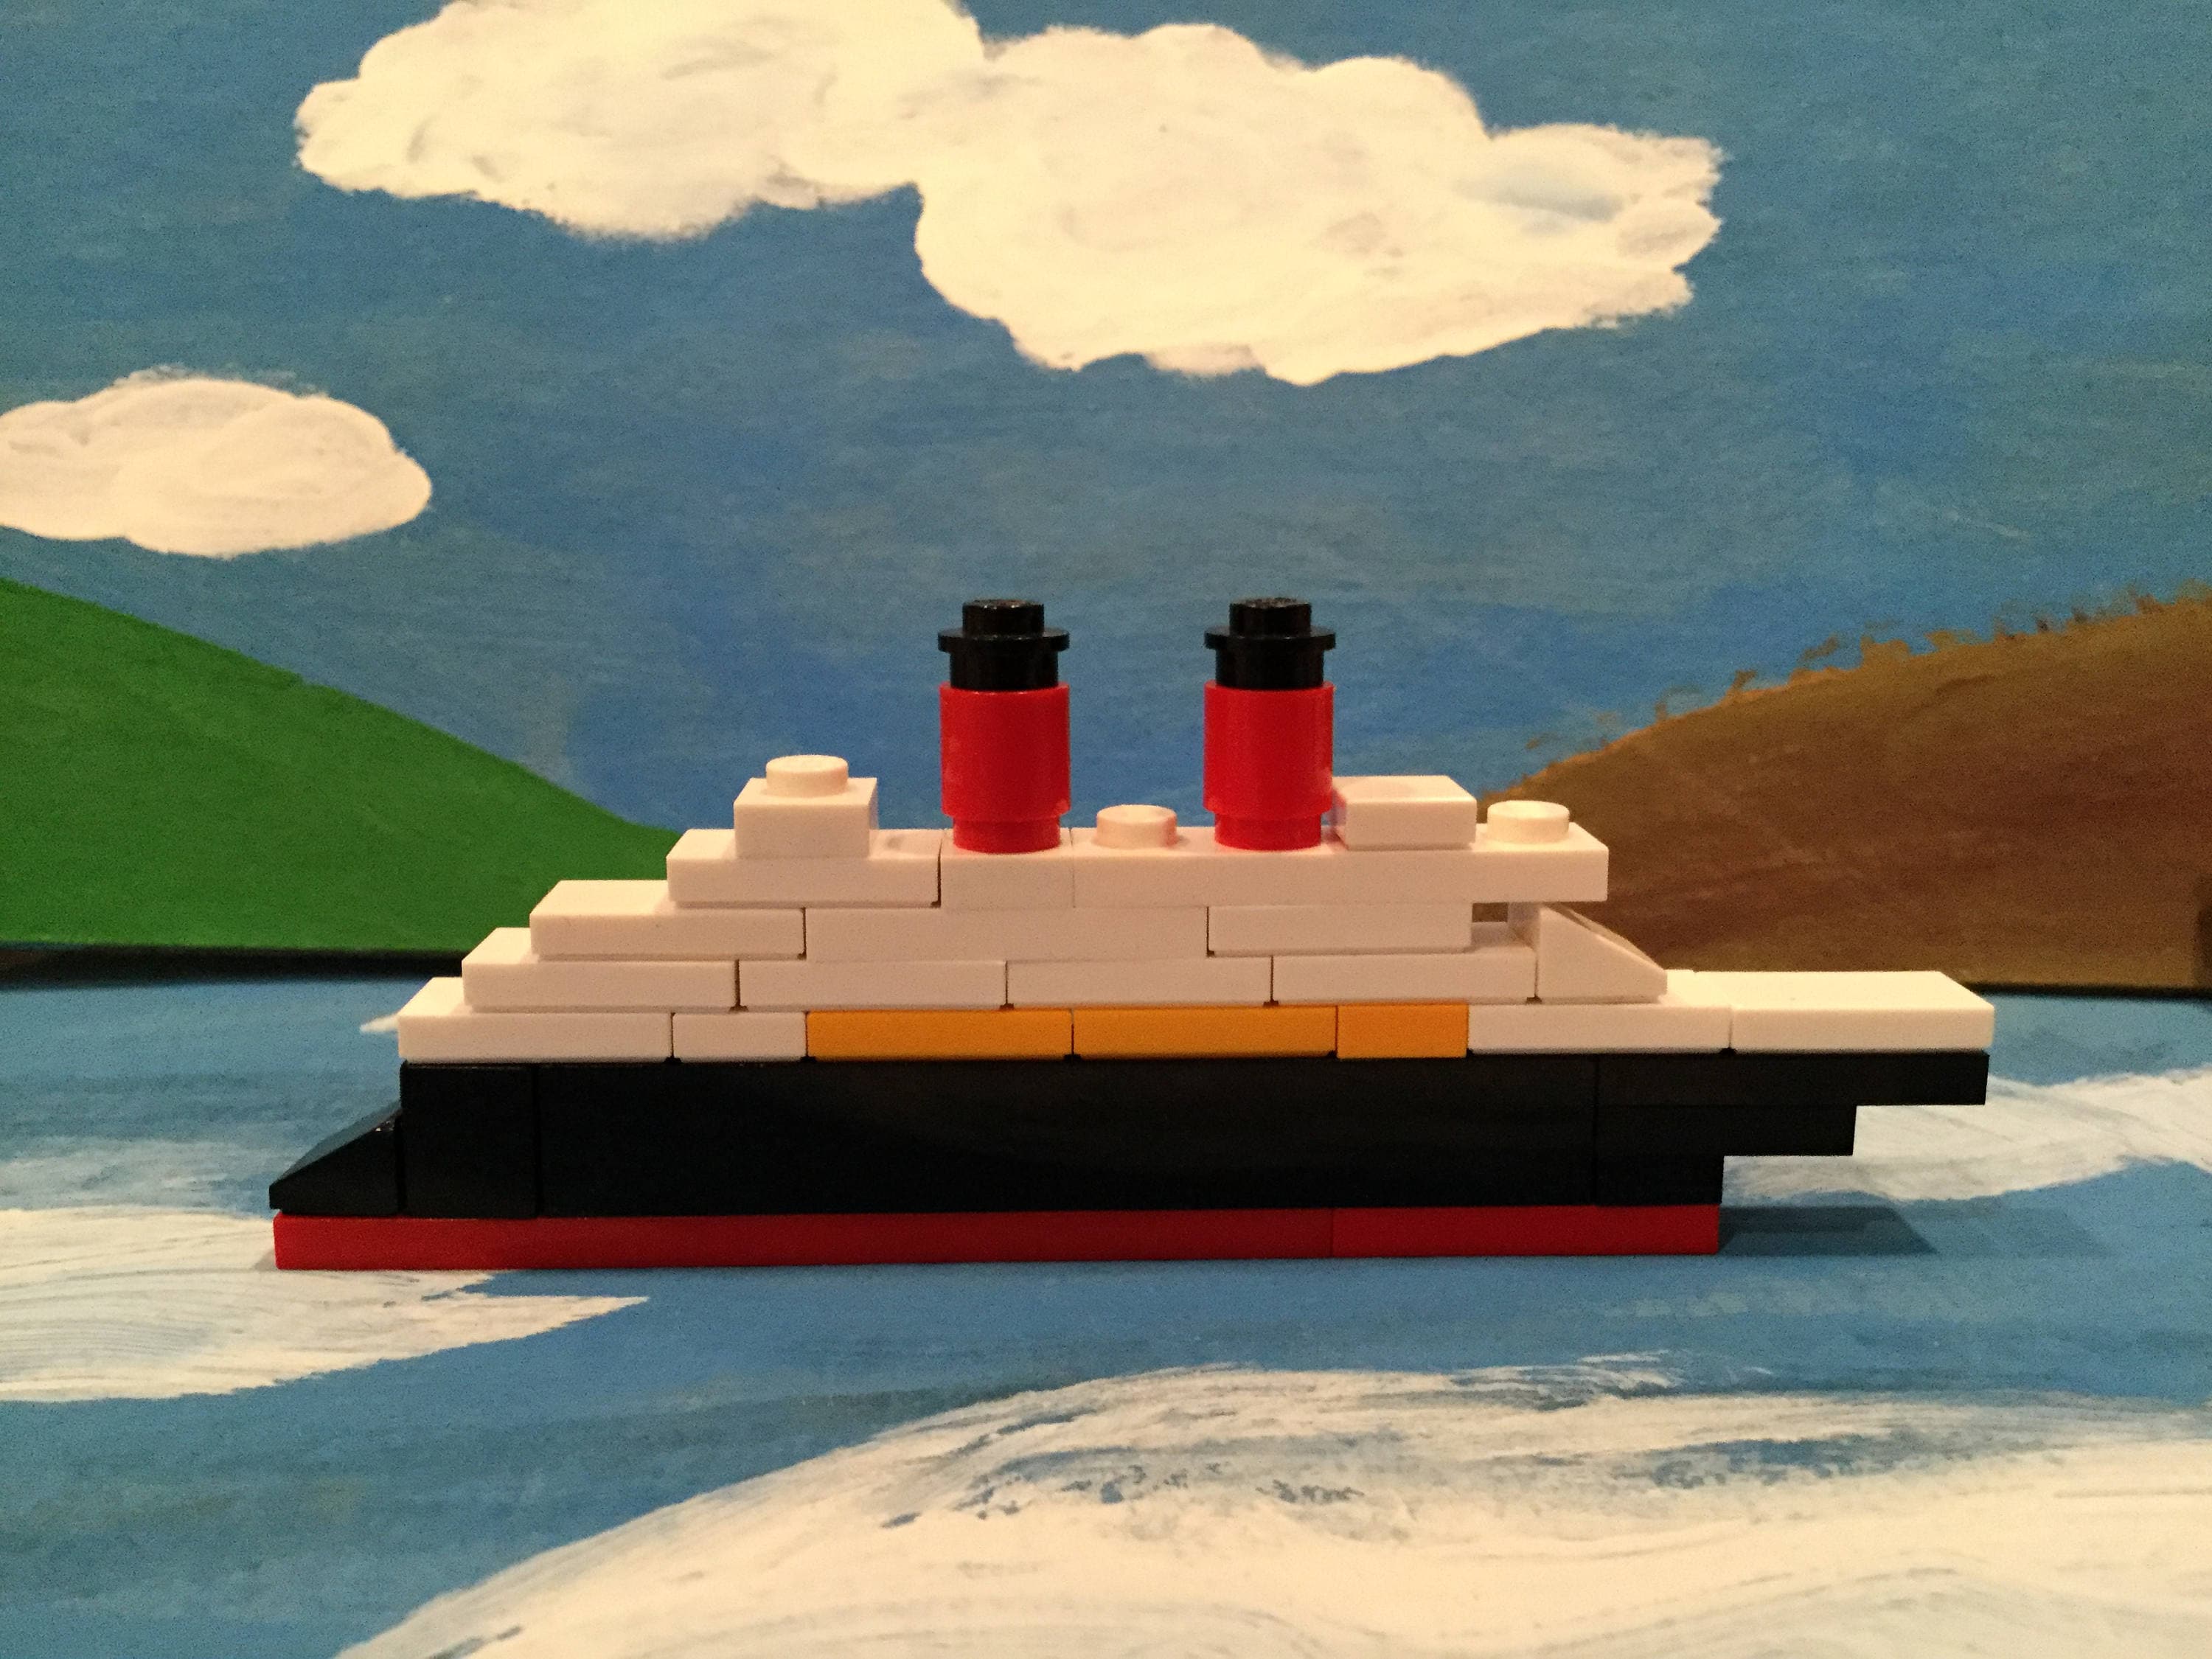 lego disney cruise ship instructions